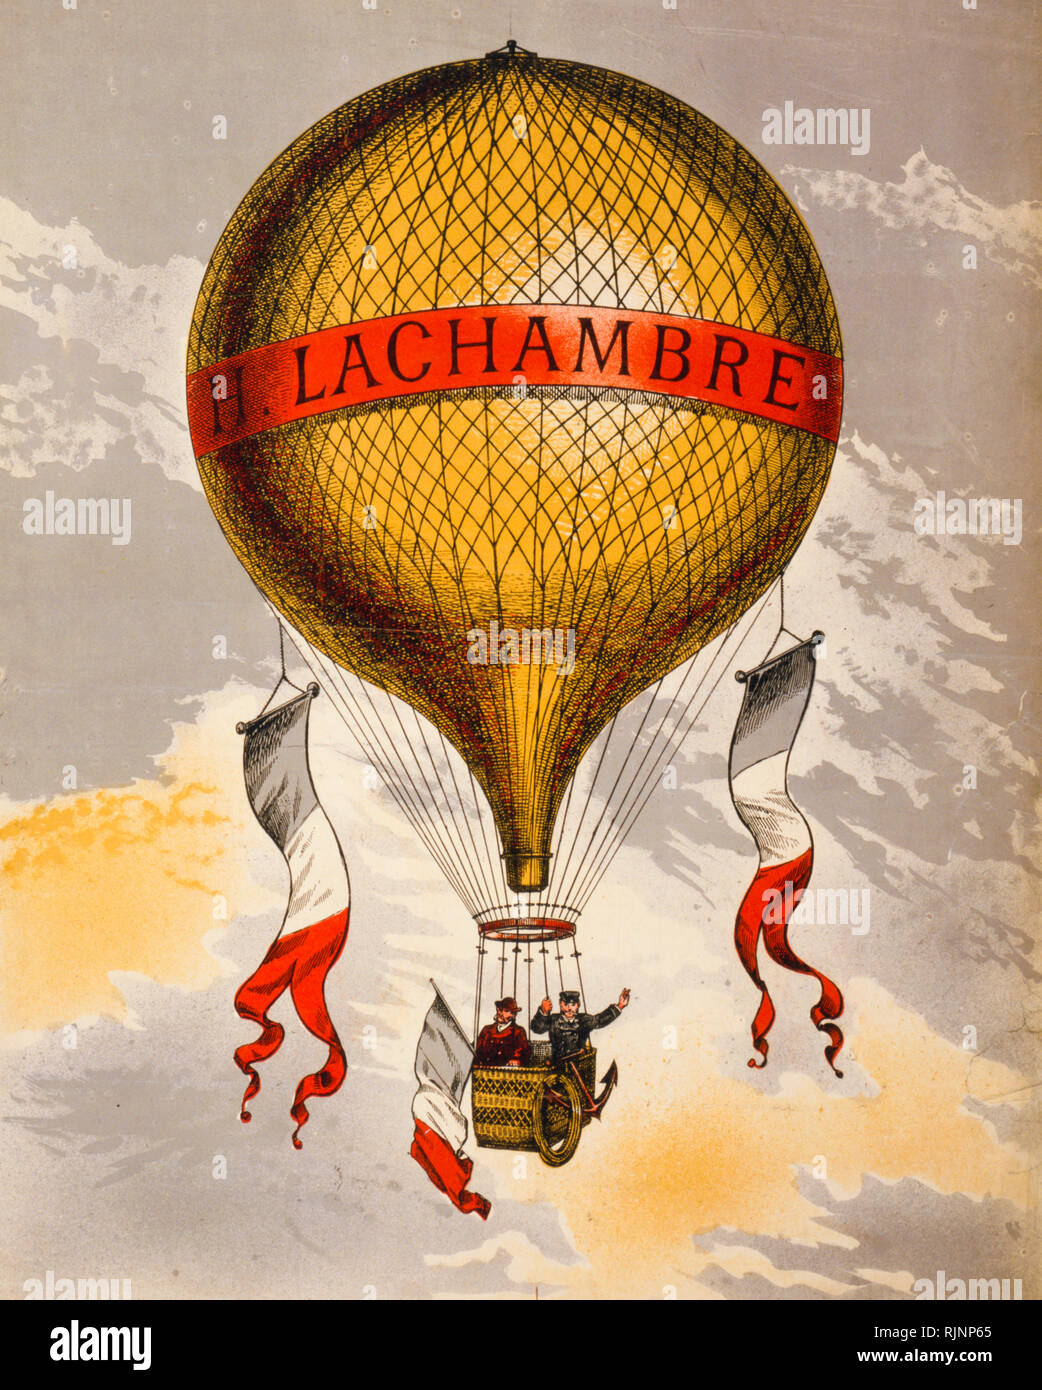 Vintage poster Publicité Publicité française peut-être un ballon fabriqué par Henri Lachambre de Vaugirard, Paris, France, Europe, entre 1880 et 1900 - imprimer Banque D'Images